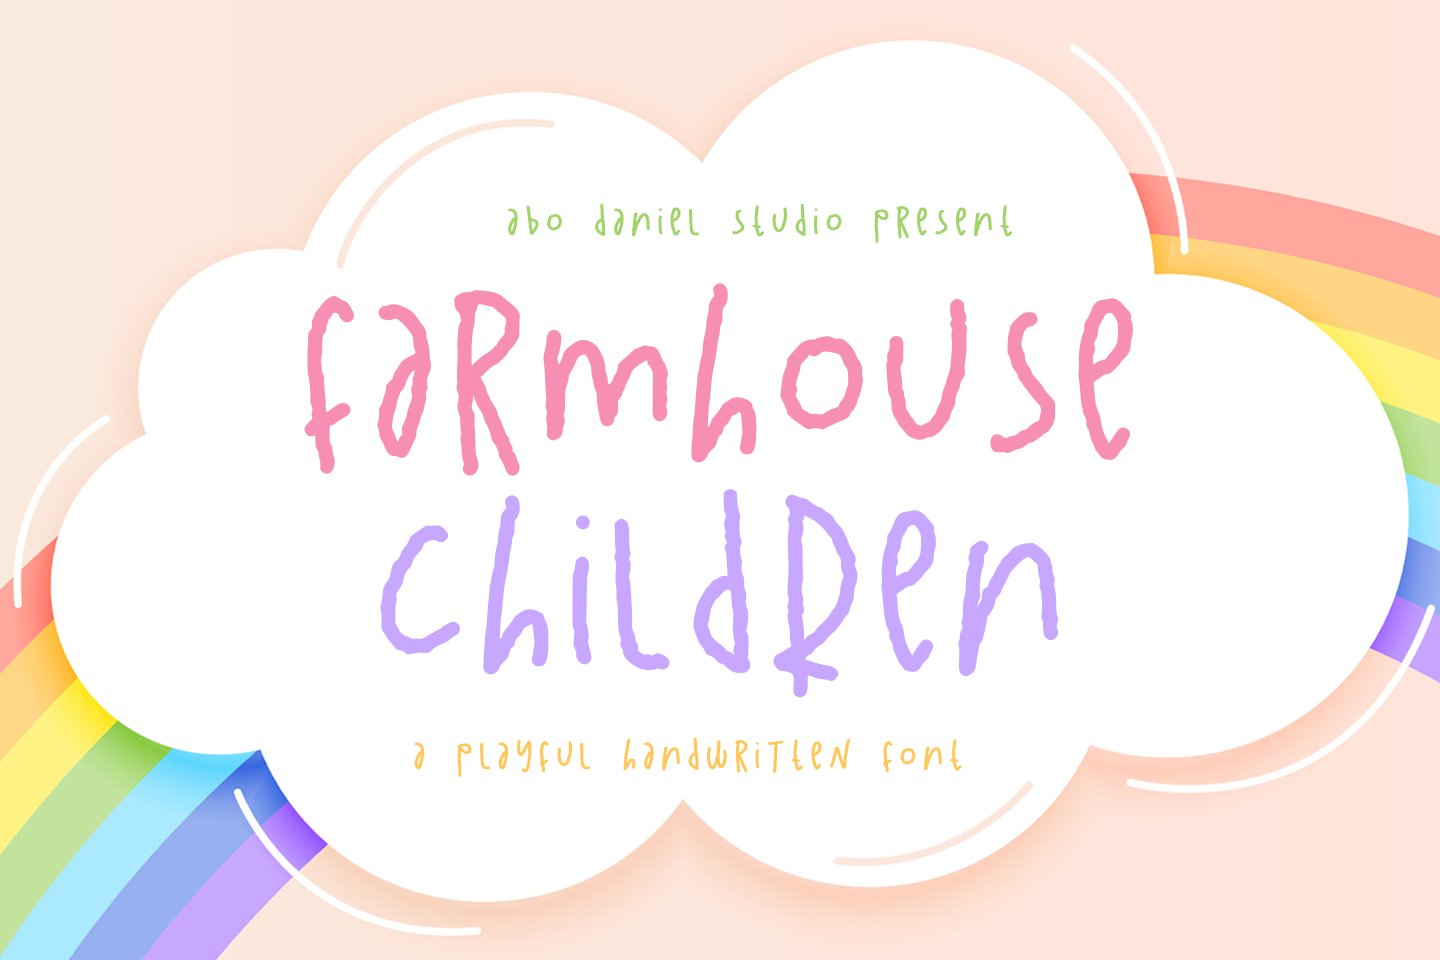 Farmhouse Children cover image.